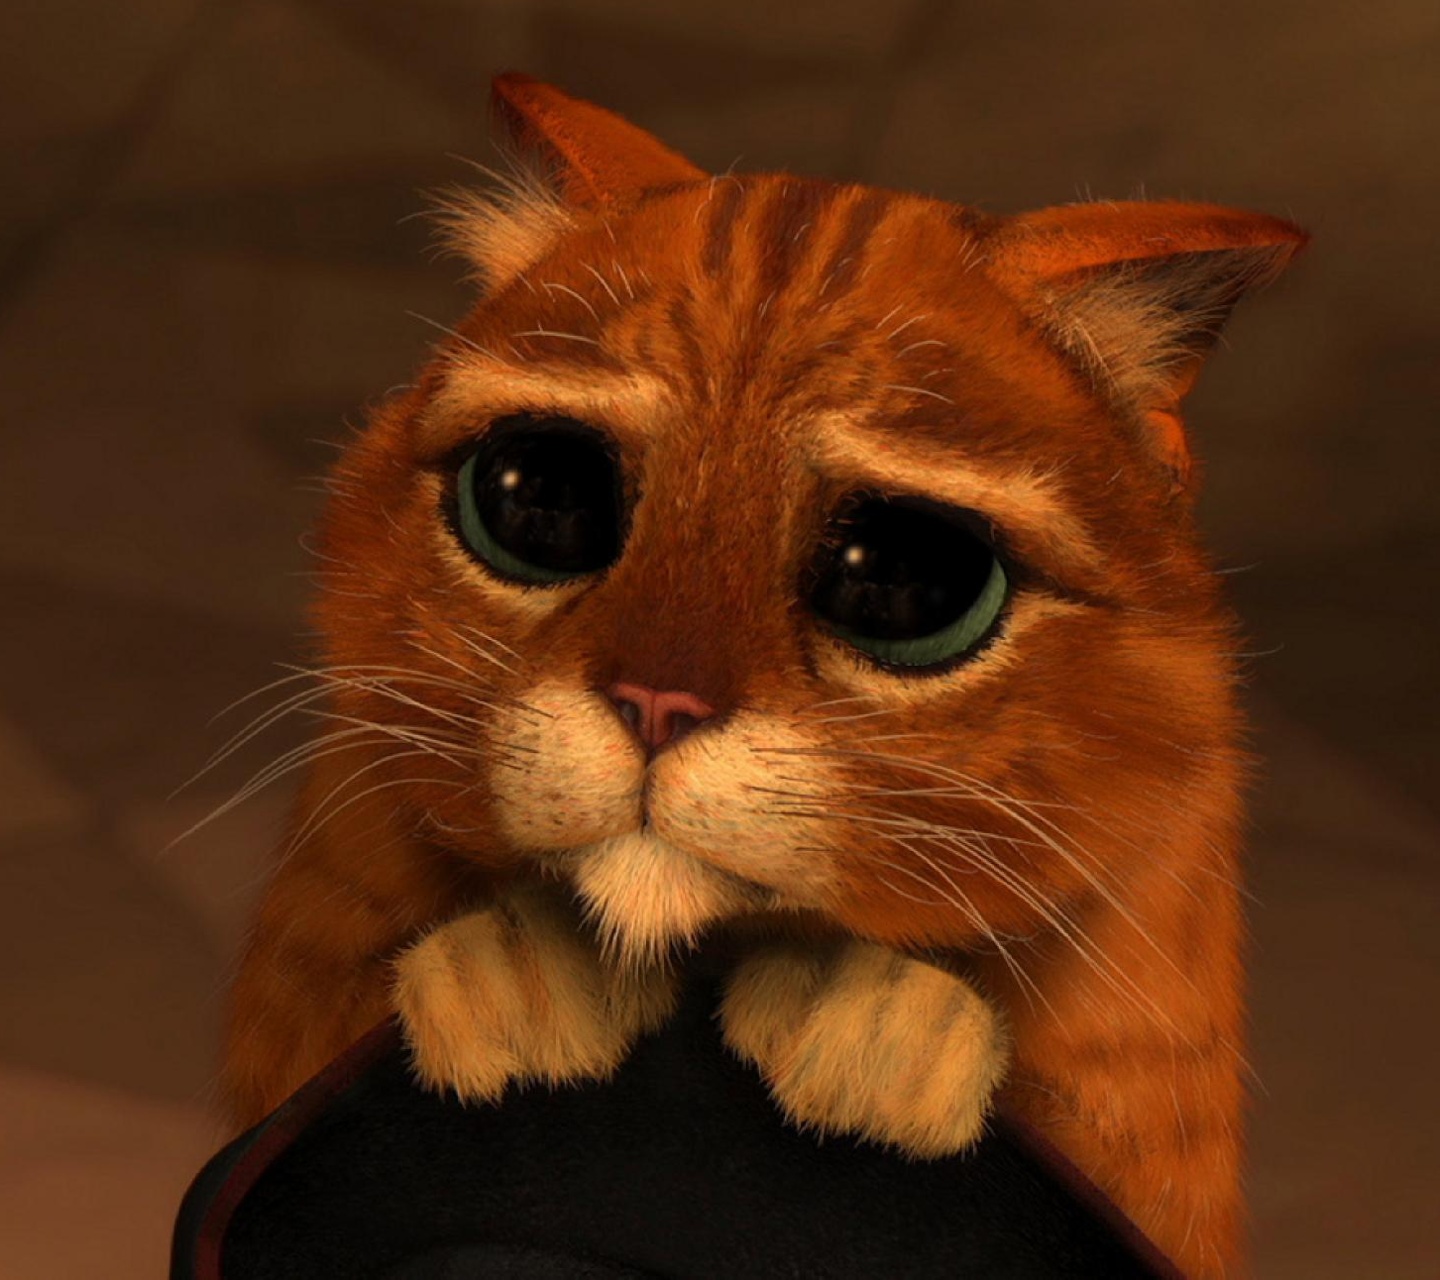 Cute Sad Cat Face - HD Wallpaper 